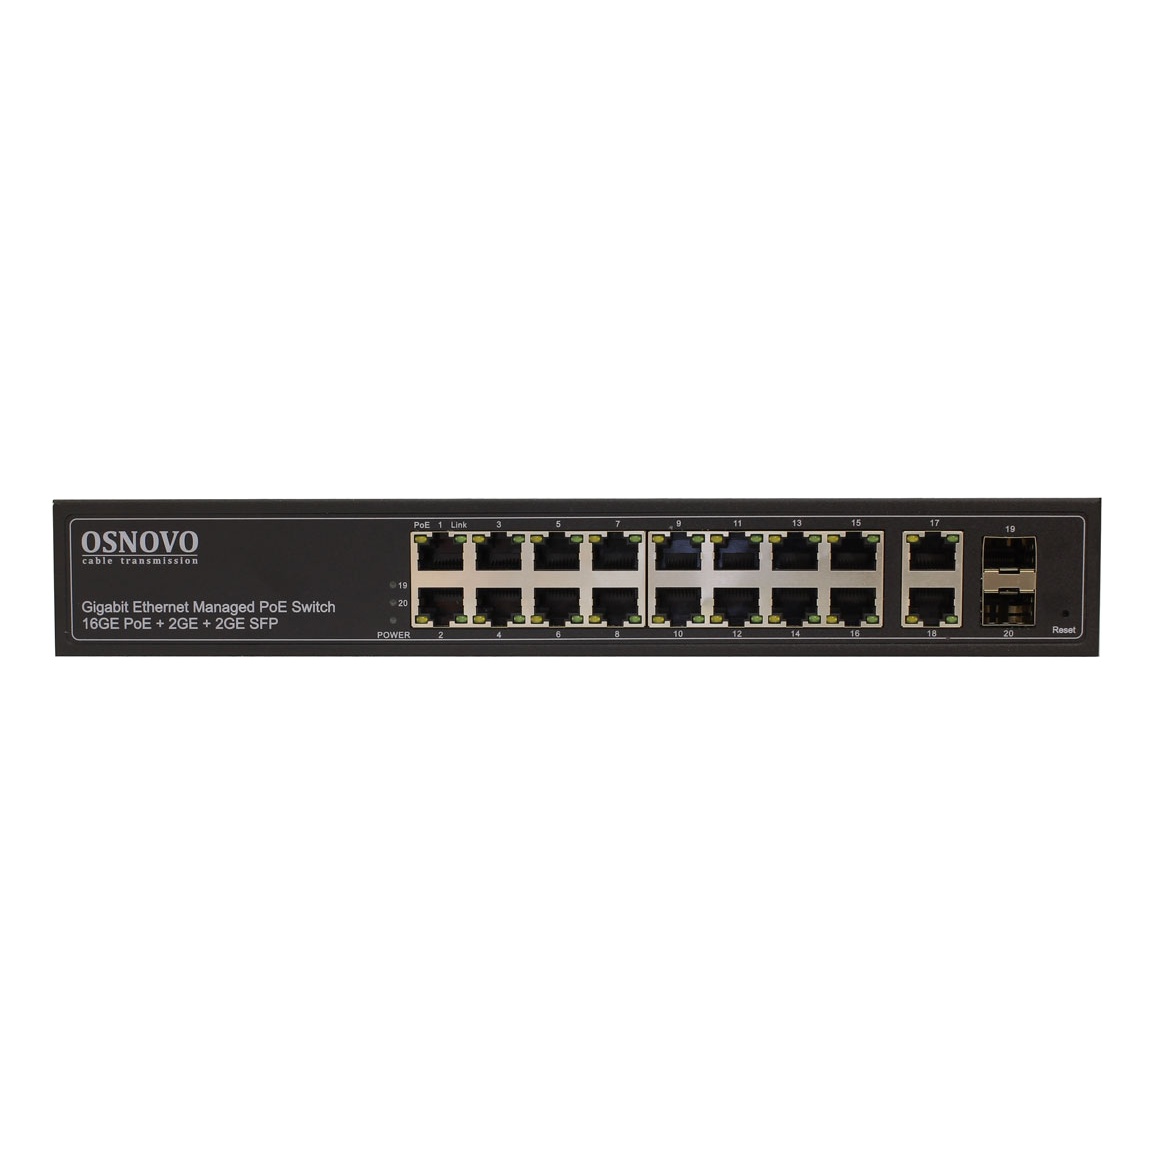 OSNOVO SW-8182/L(300W) SW-8182/L(300W) Управляемый L2 PoE коммутатор Gigabit Ethernet на 16 RJ45 PoE + 2 x RJ45 + 2 GE SFP портов